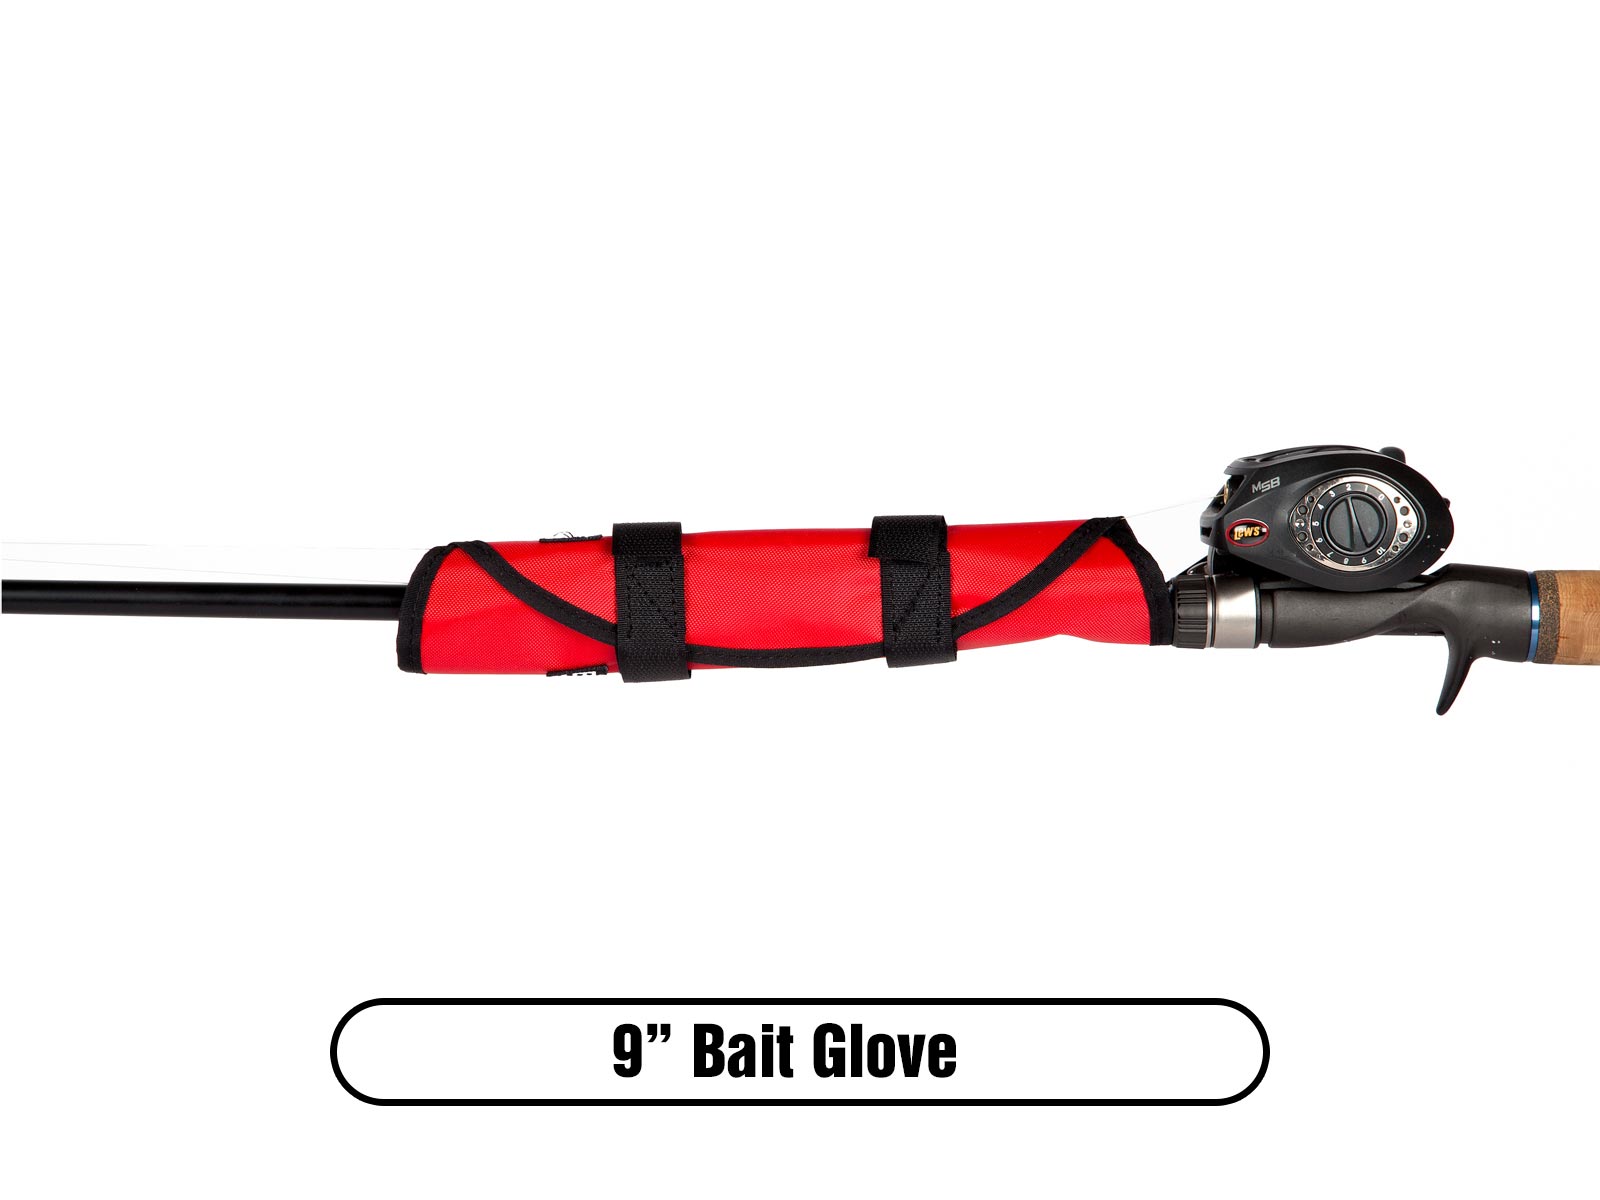 The Bait Glove – The Rod Glove